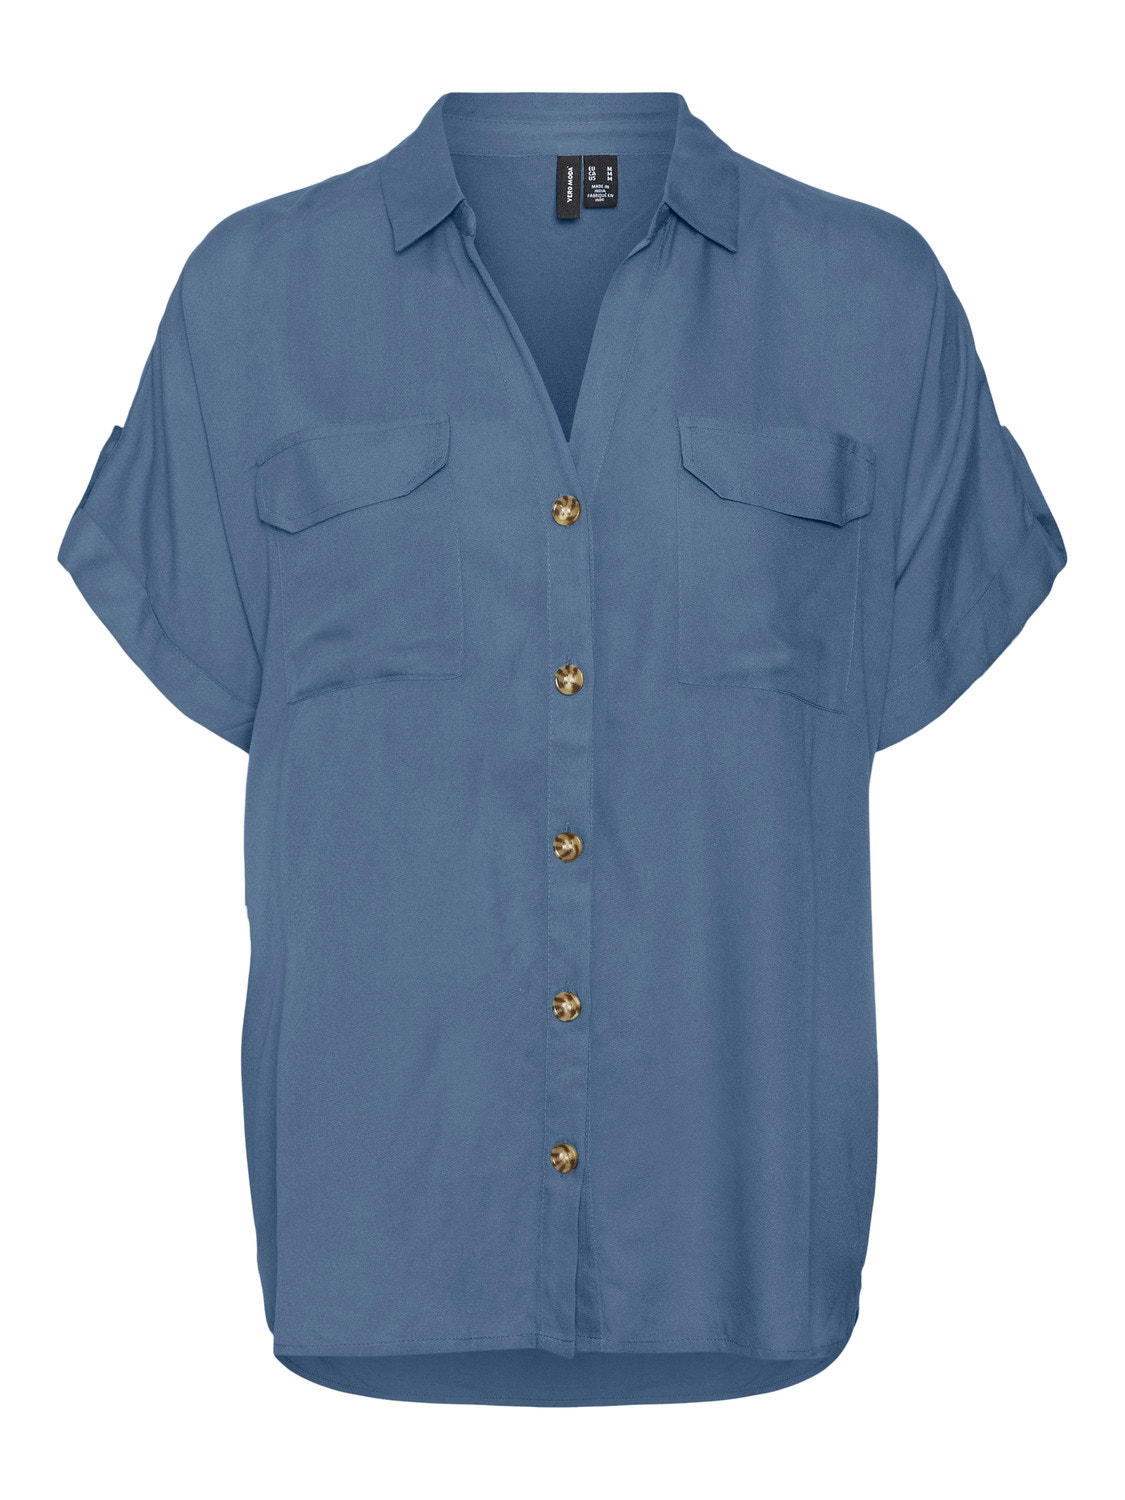 Vero Moda VMBUMPY Koszula -Coronet Blue - 10310139